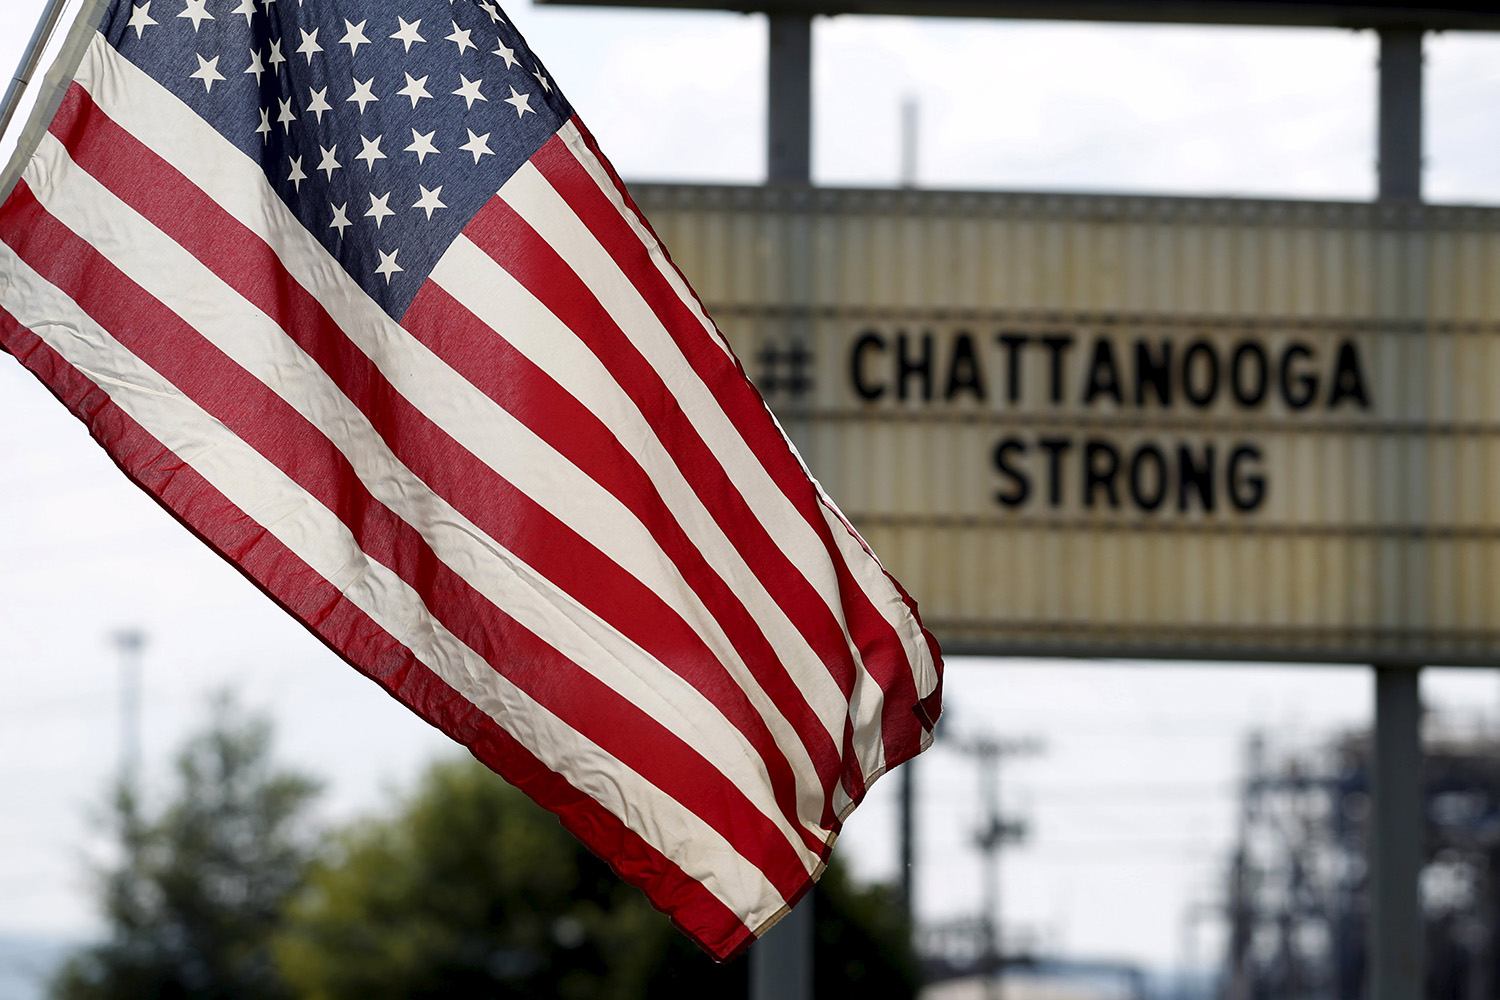 El componente islamista irrumpe con fuerza en la investigación de la masacre de Chattanooga